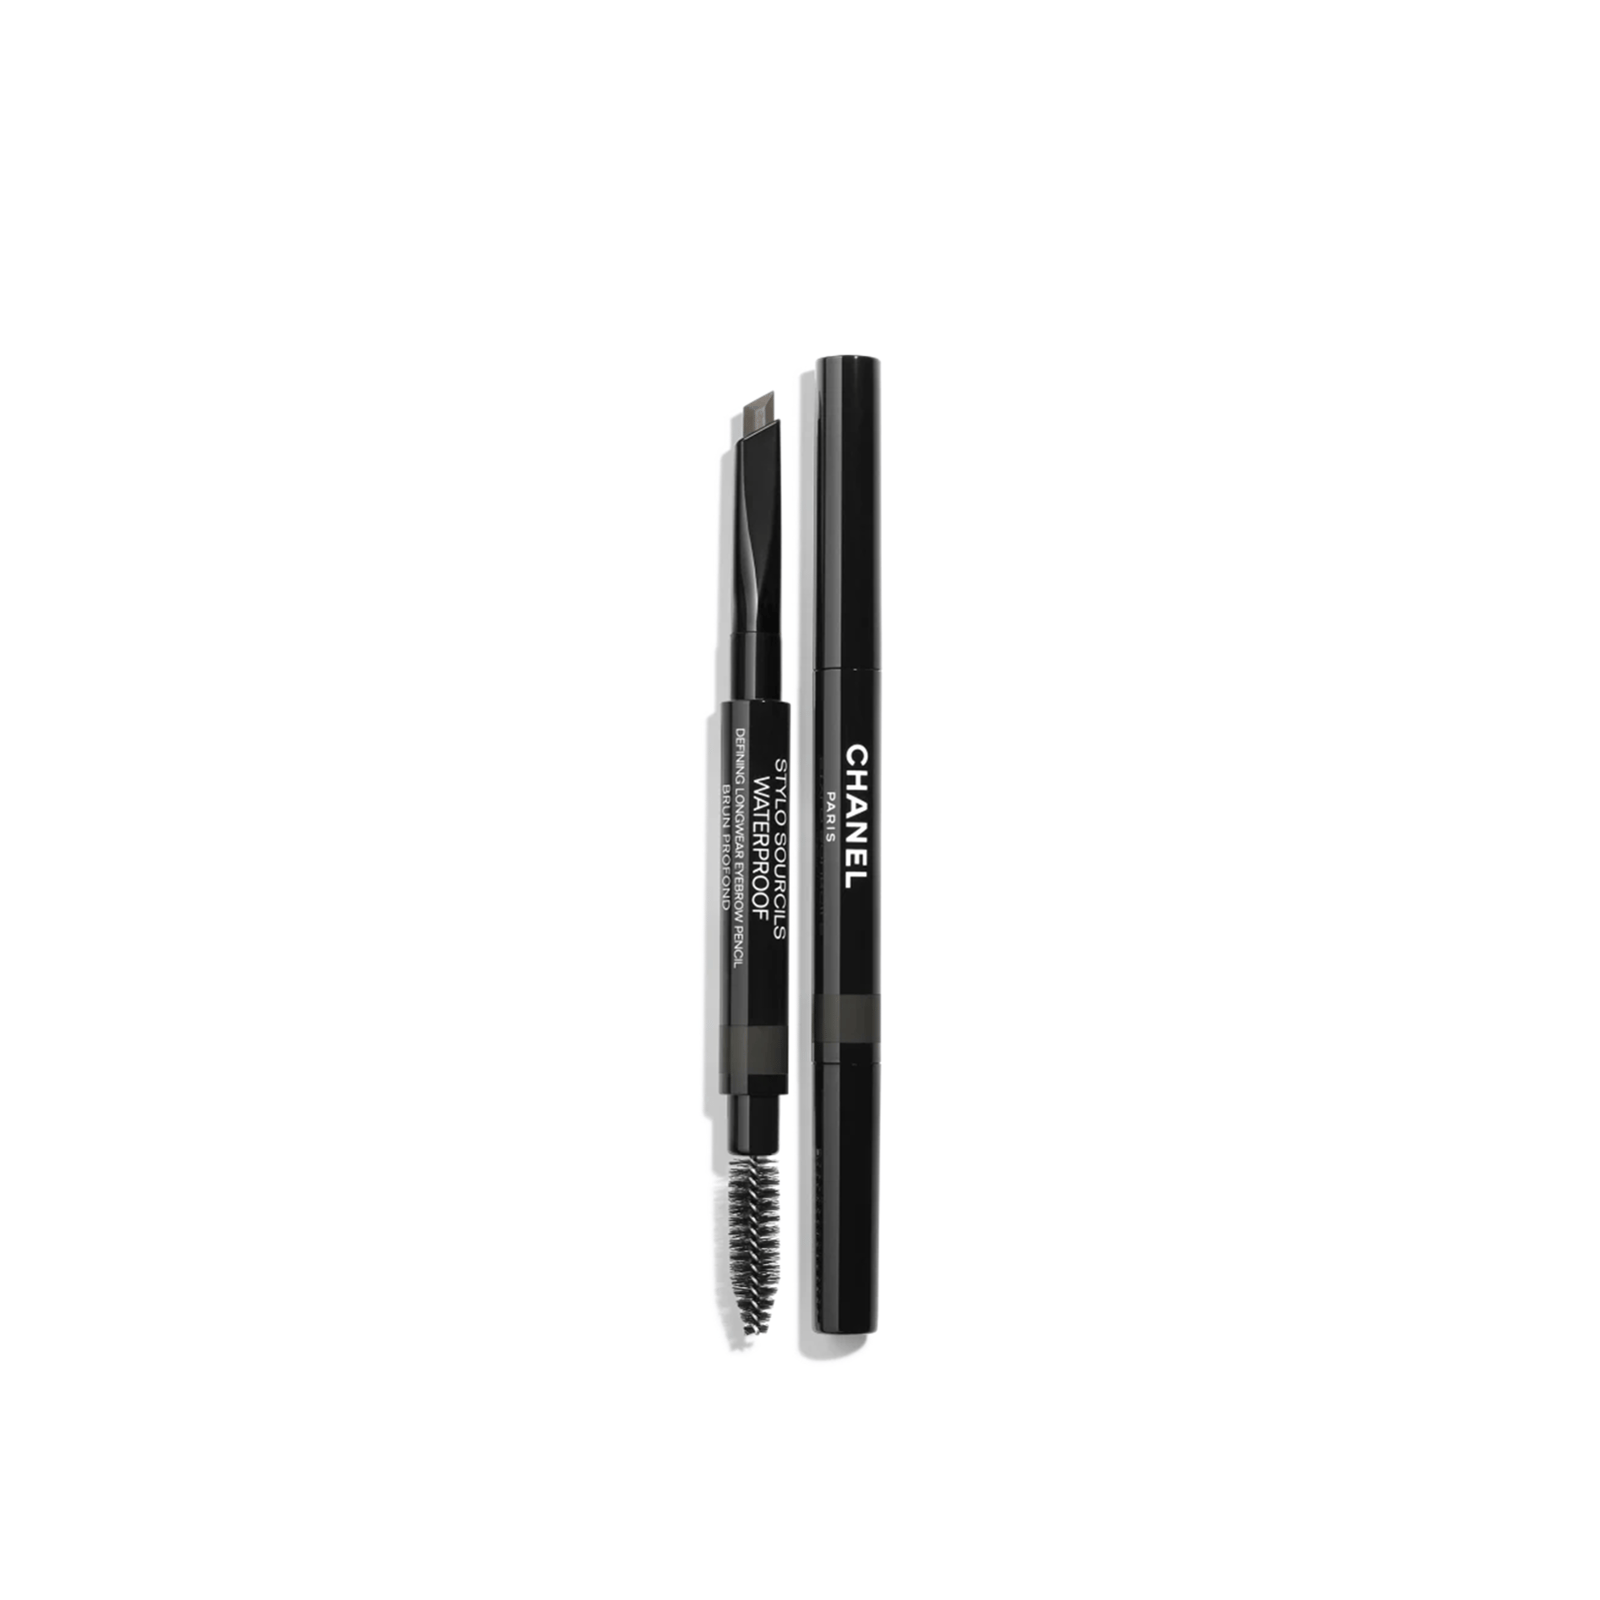 CHANEL Stylo Sourcils Waterproof Defining Longwear Eyebrow Pencil 810 Brun Profond 0.27g (0.009oz)